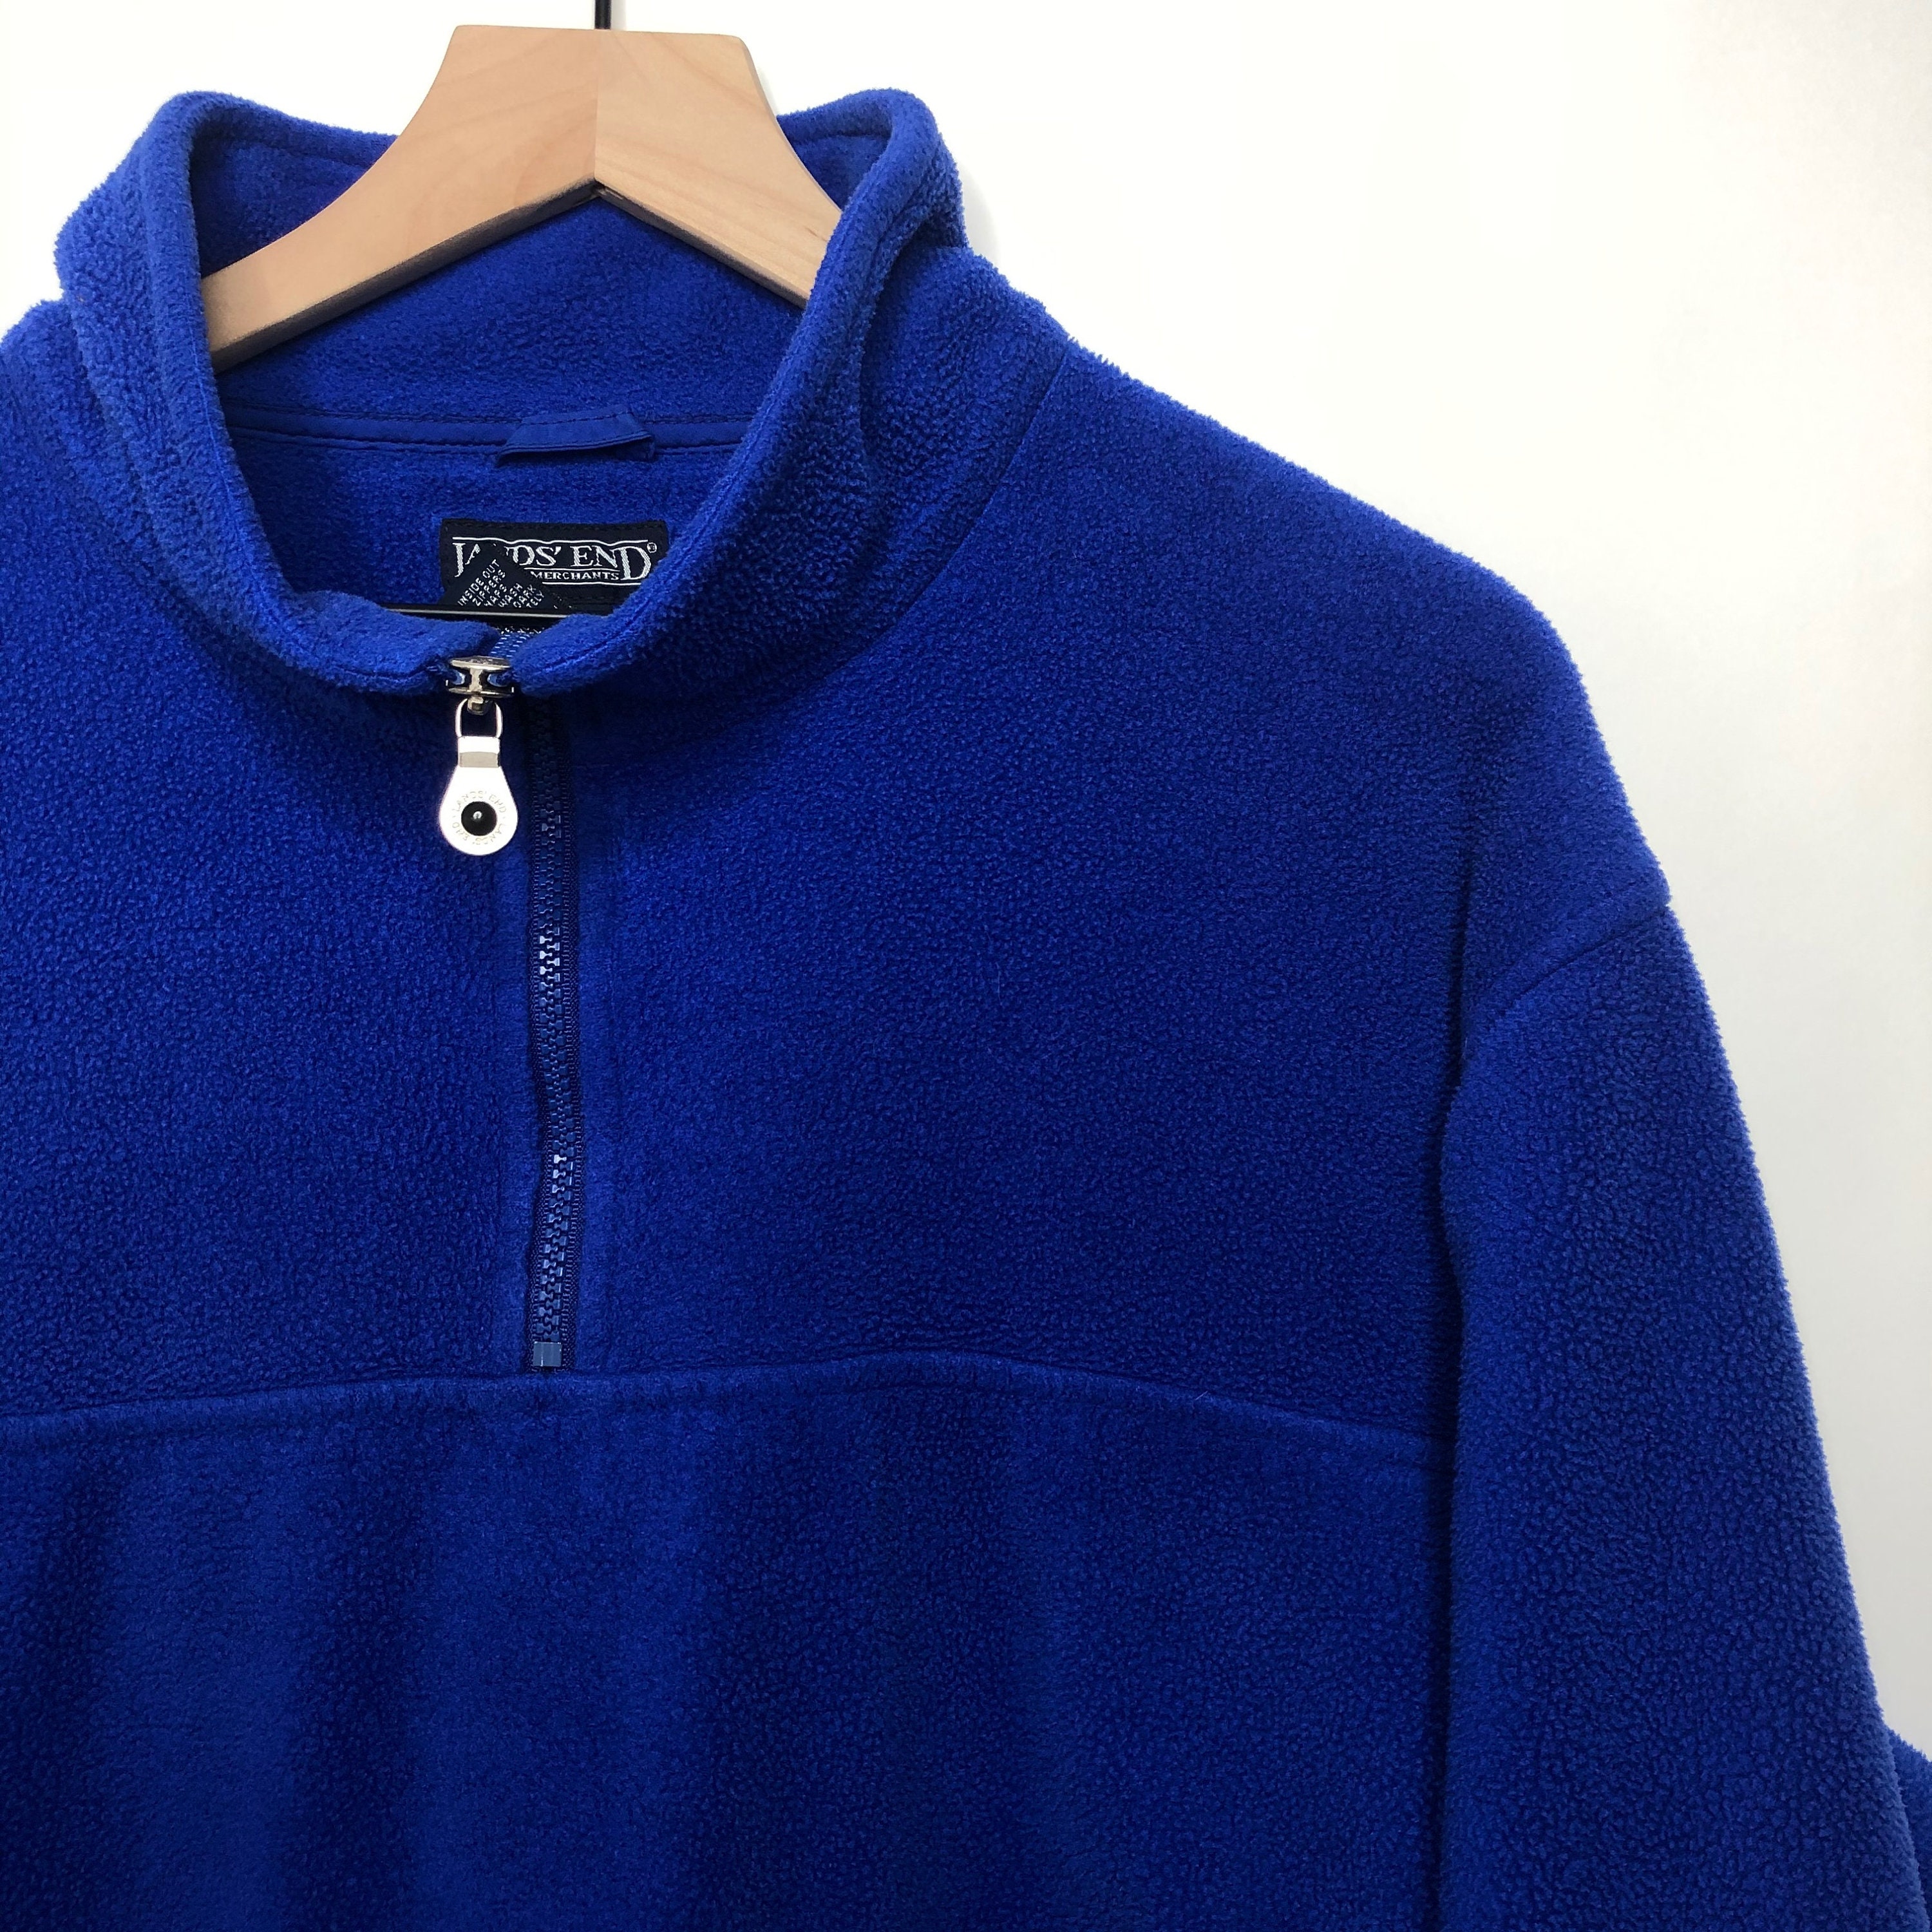 Vintage Lands End Fleece Pullover Jacket 90s Quarter Zip Blue | Etsy